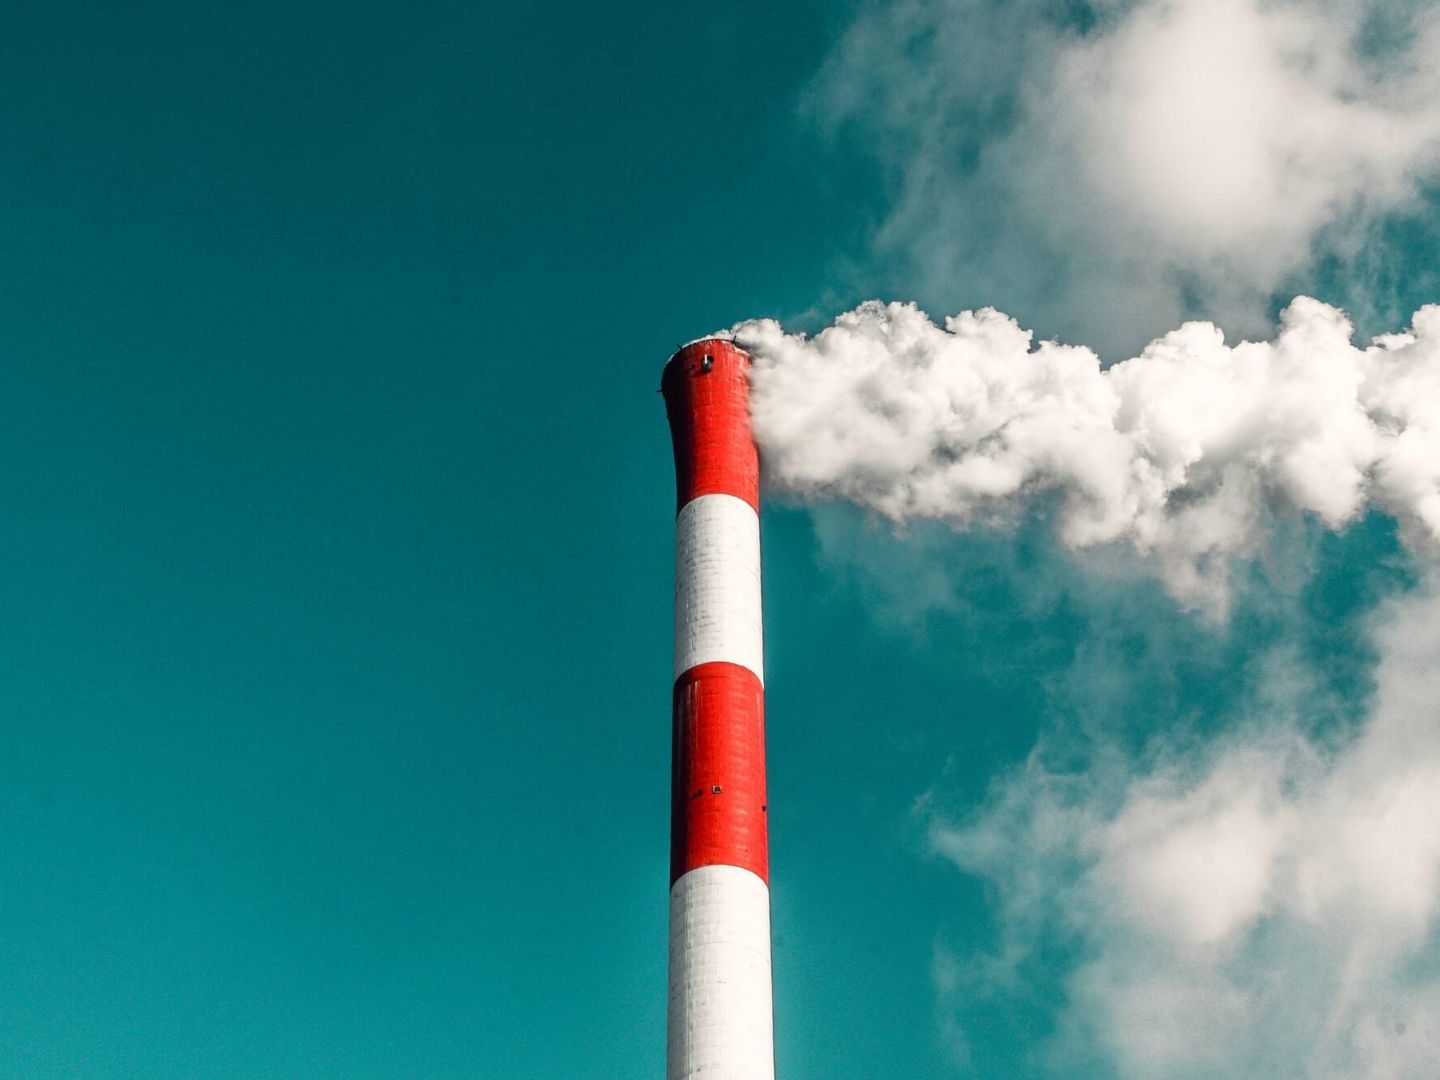 Una de las acciones indiscutibles es eliminar las emisiones de gases de efecto invernadero. (Unsplash/@veeterzy)